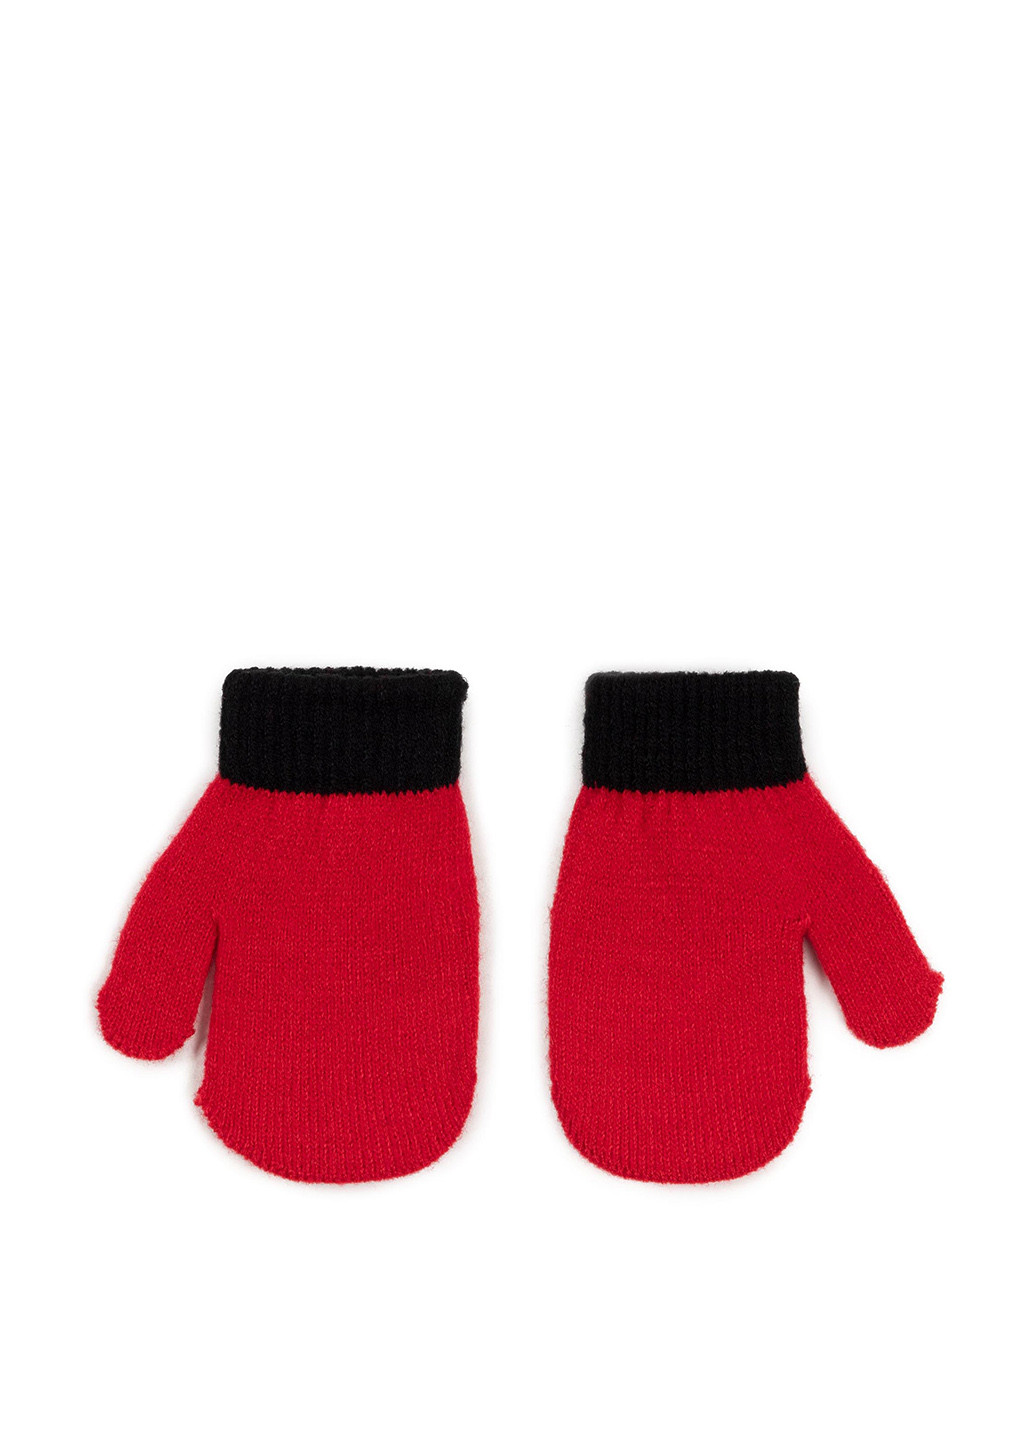 Комплект дитячий ACCCS-AW19-11DSTC Mickey&Friends шапка + шарф + рукавиці горошок червоні кежуали акрил